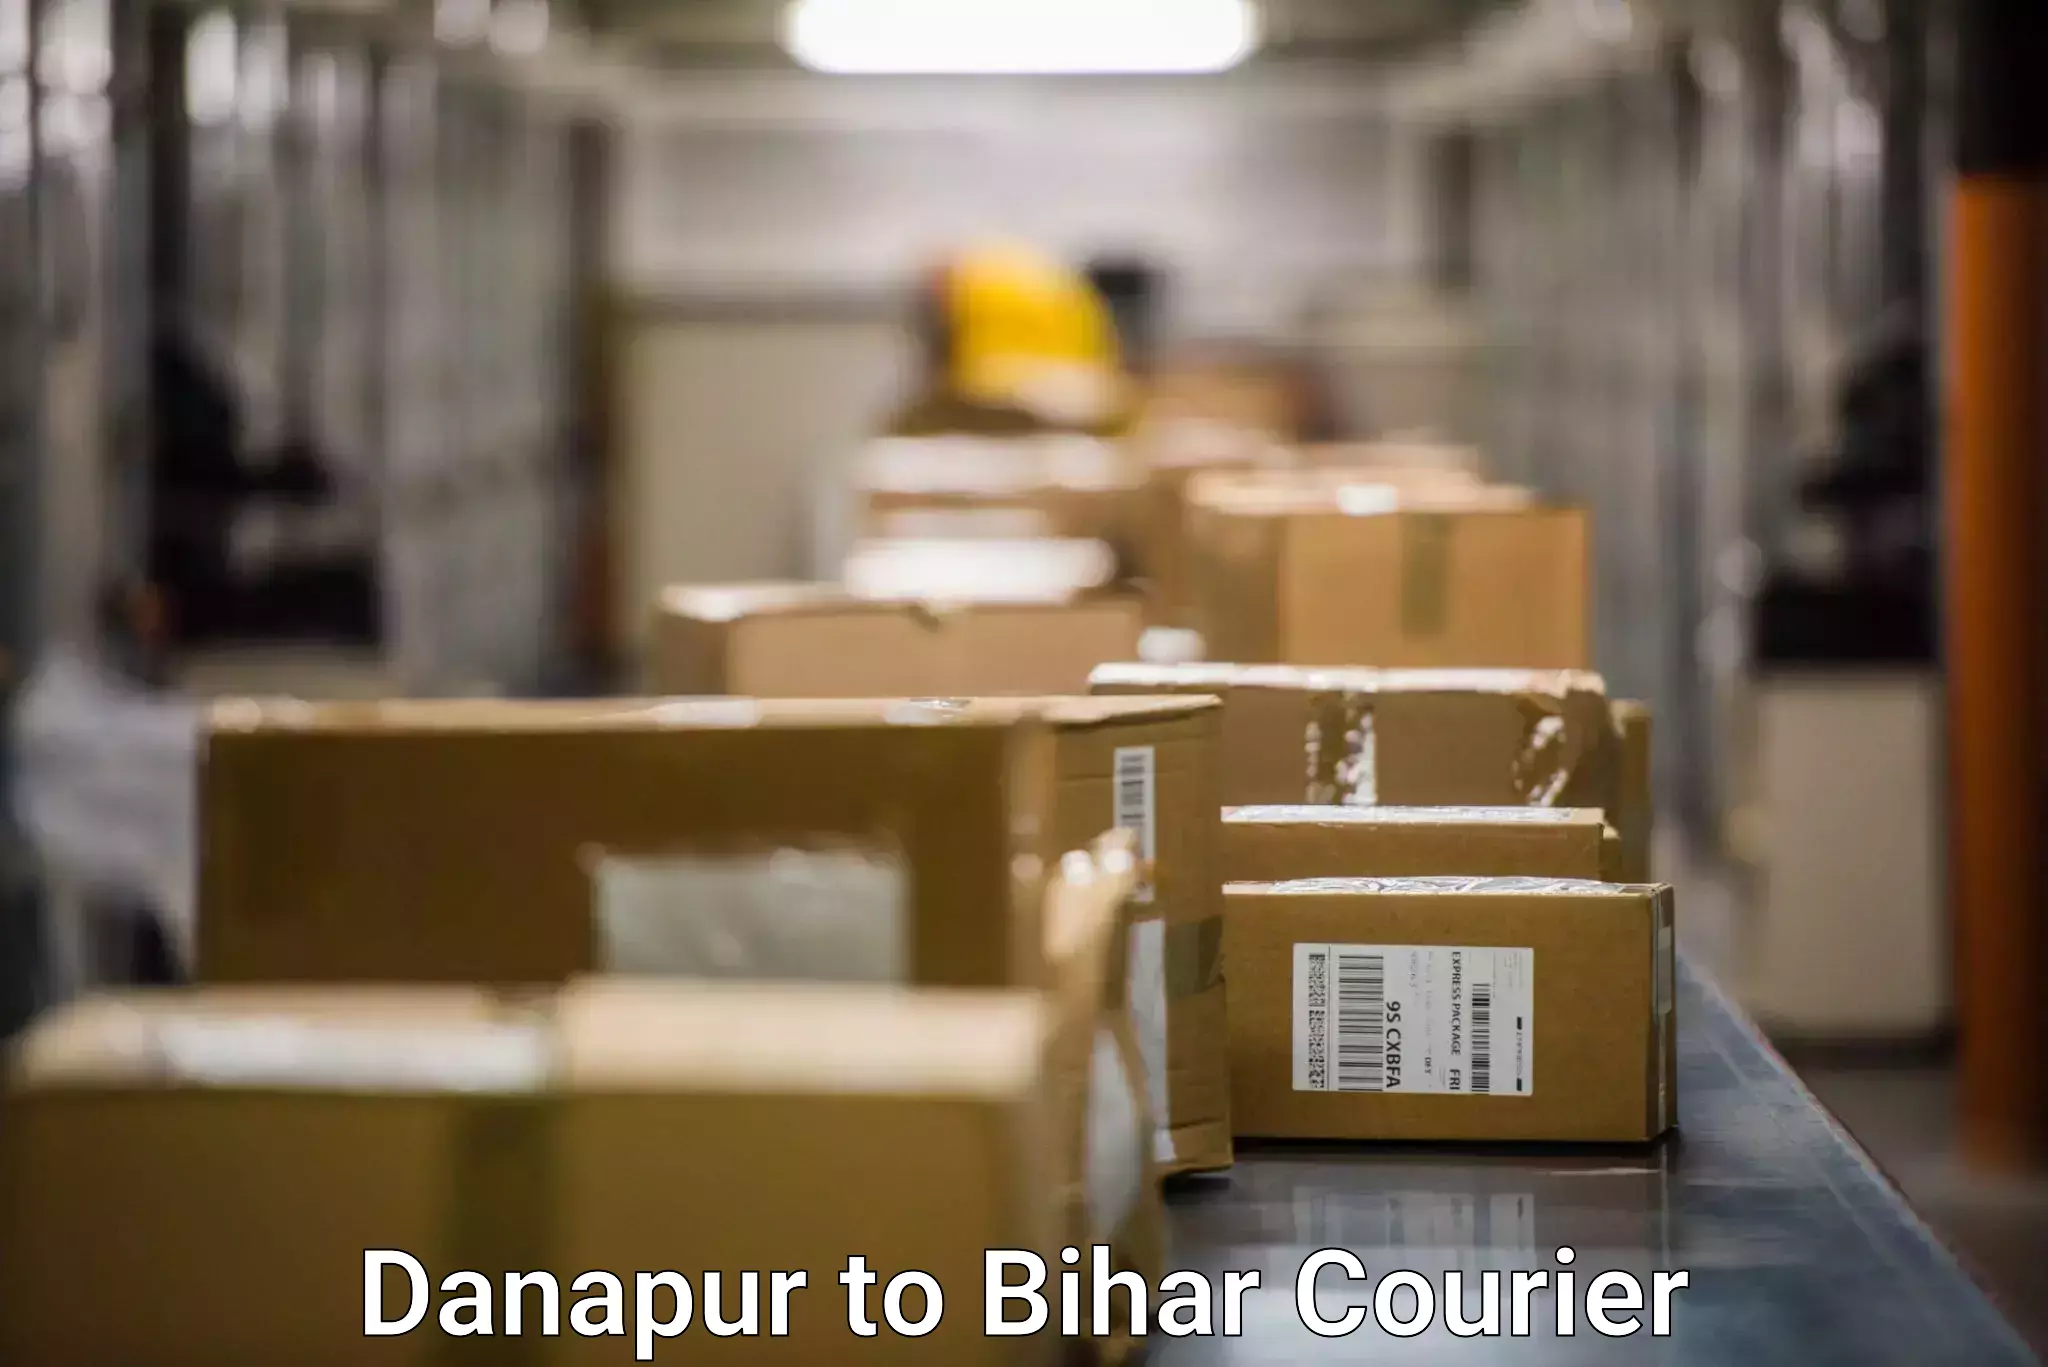 Speedy delivery service Danapur to Benipatti